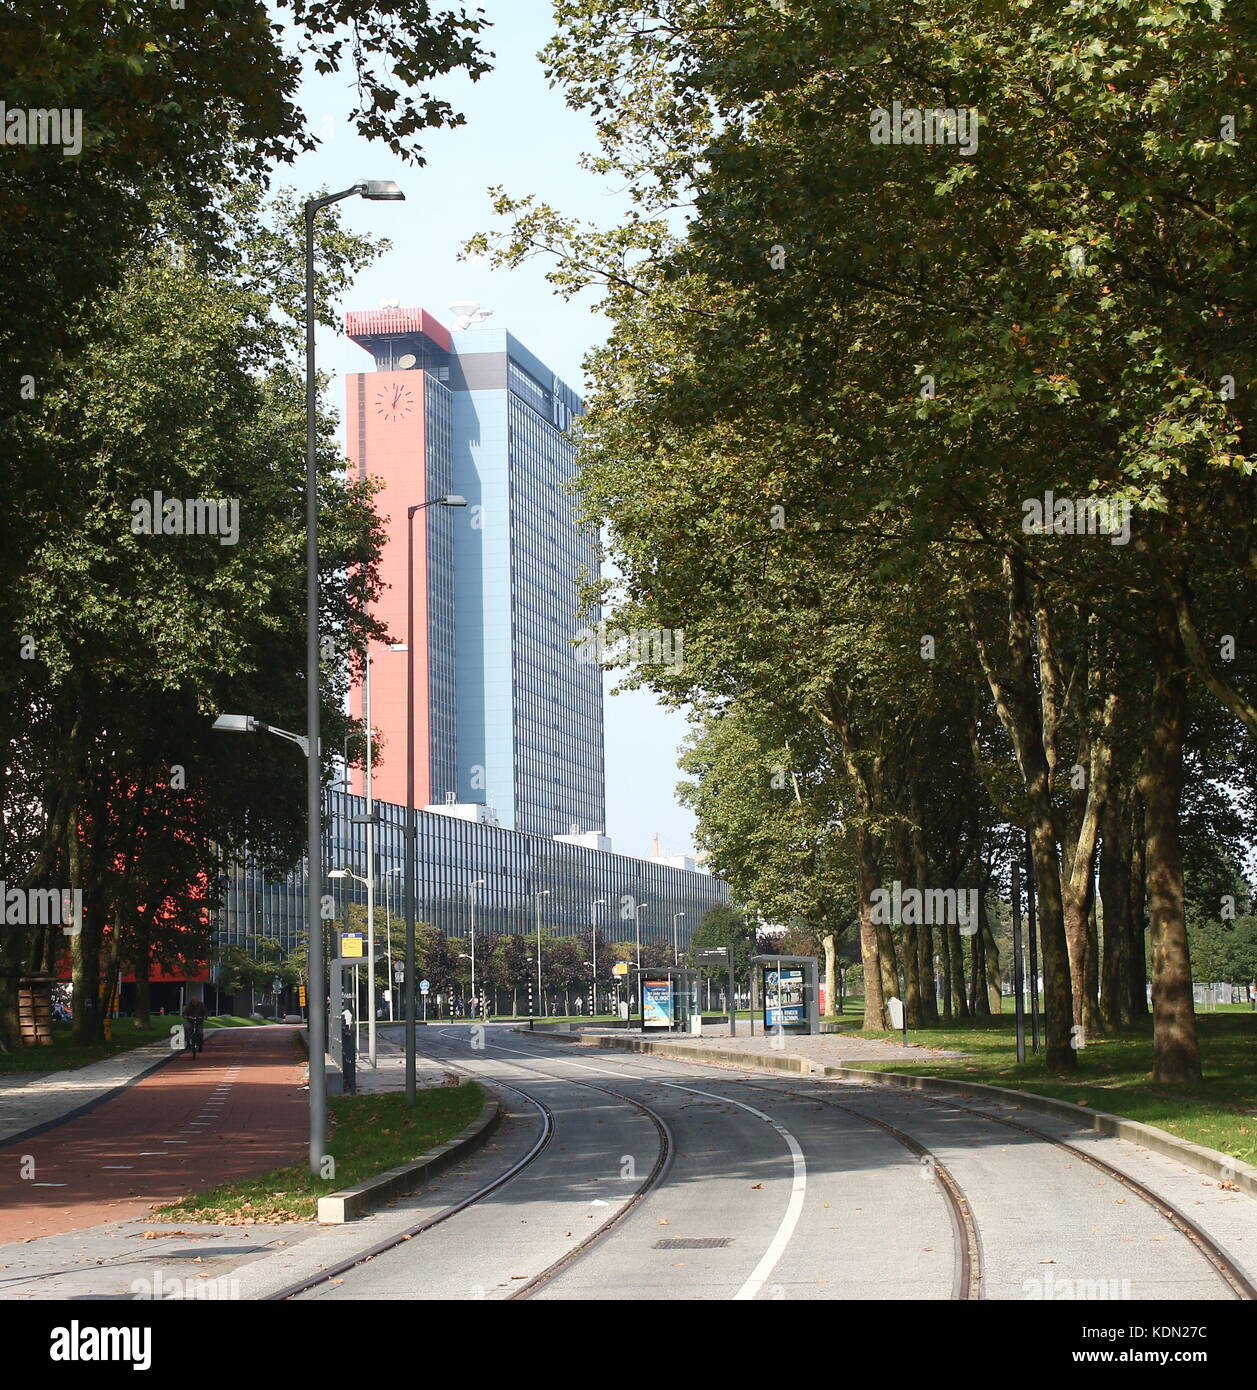 Auf dem Campus der Technischen Universität Delft, Niederlande. Hochhaus der Fakultät für Elektrotechnik, Mathematik und Informatik (EEMCS). Stockfoto